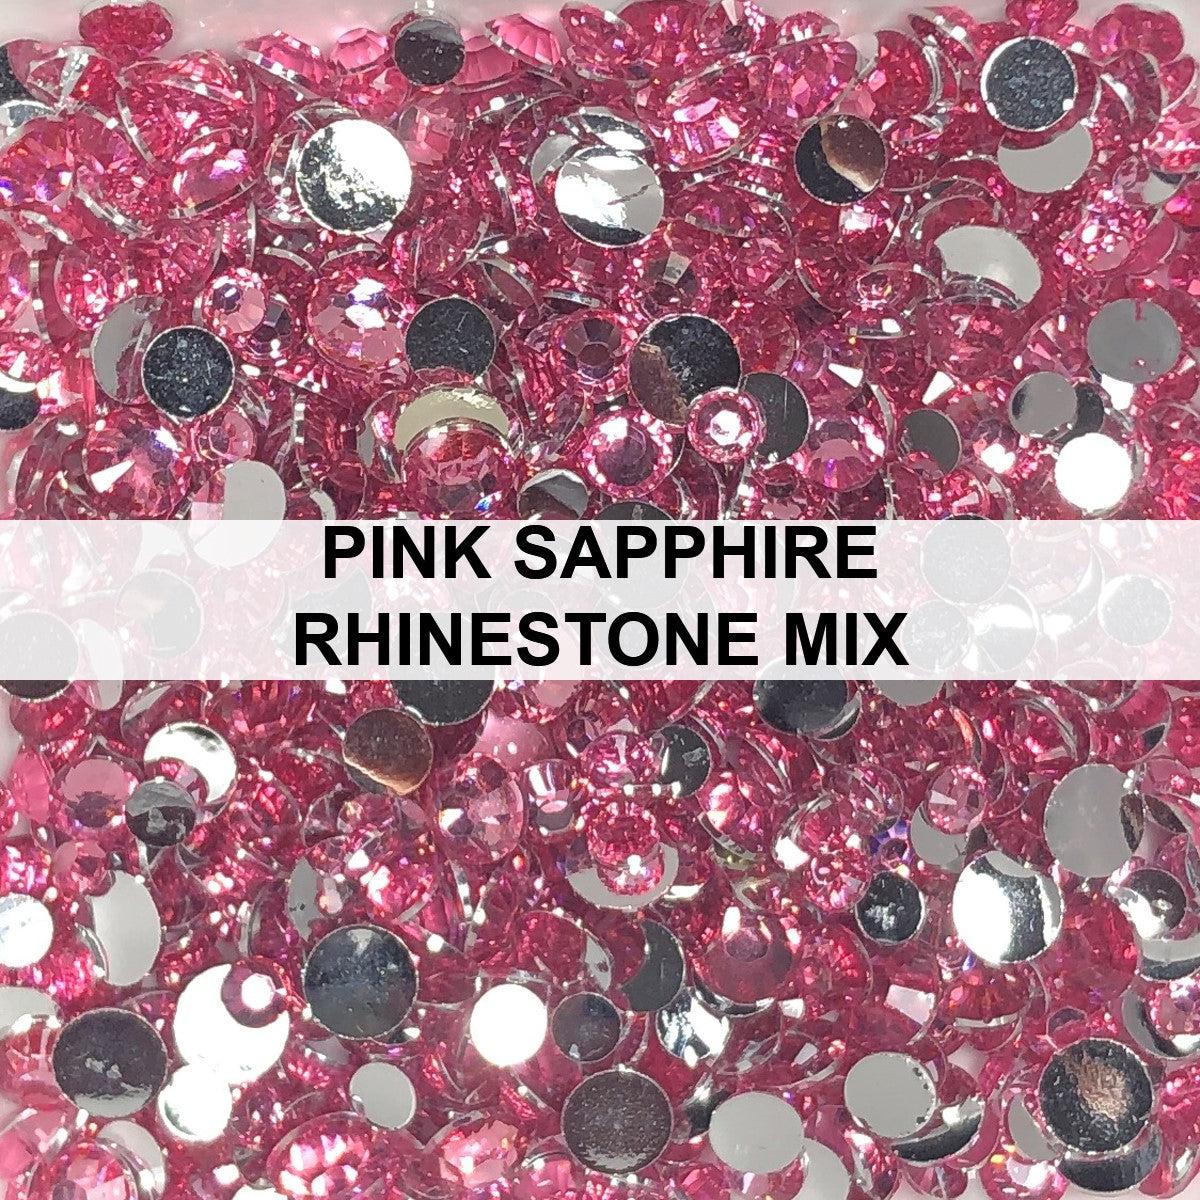 Pink Sapphire Rhinestone Mix - Kat Scrappiness